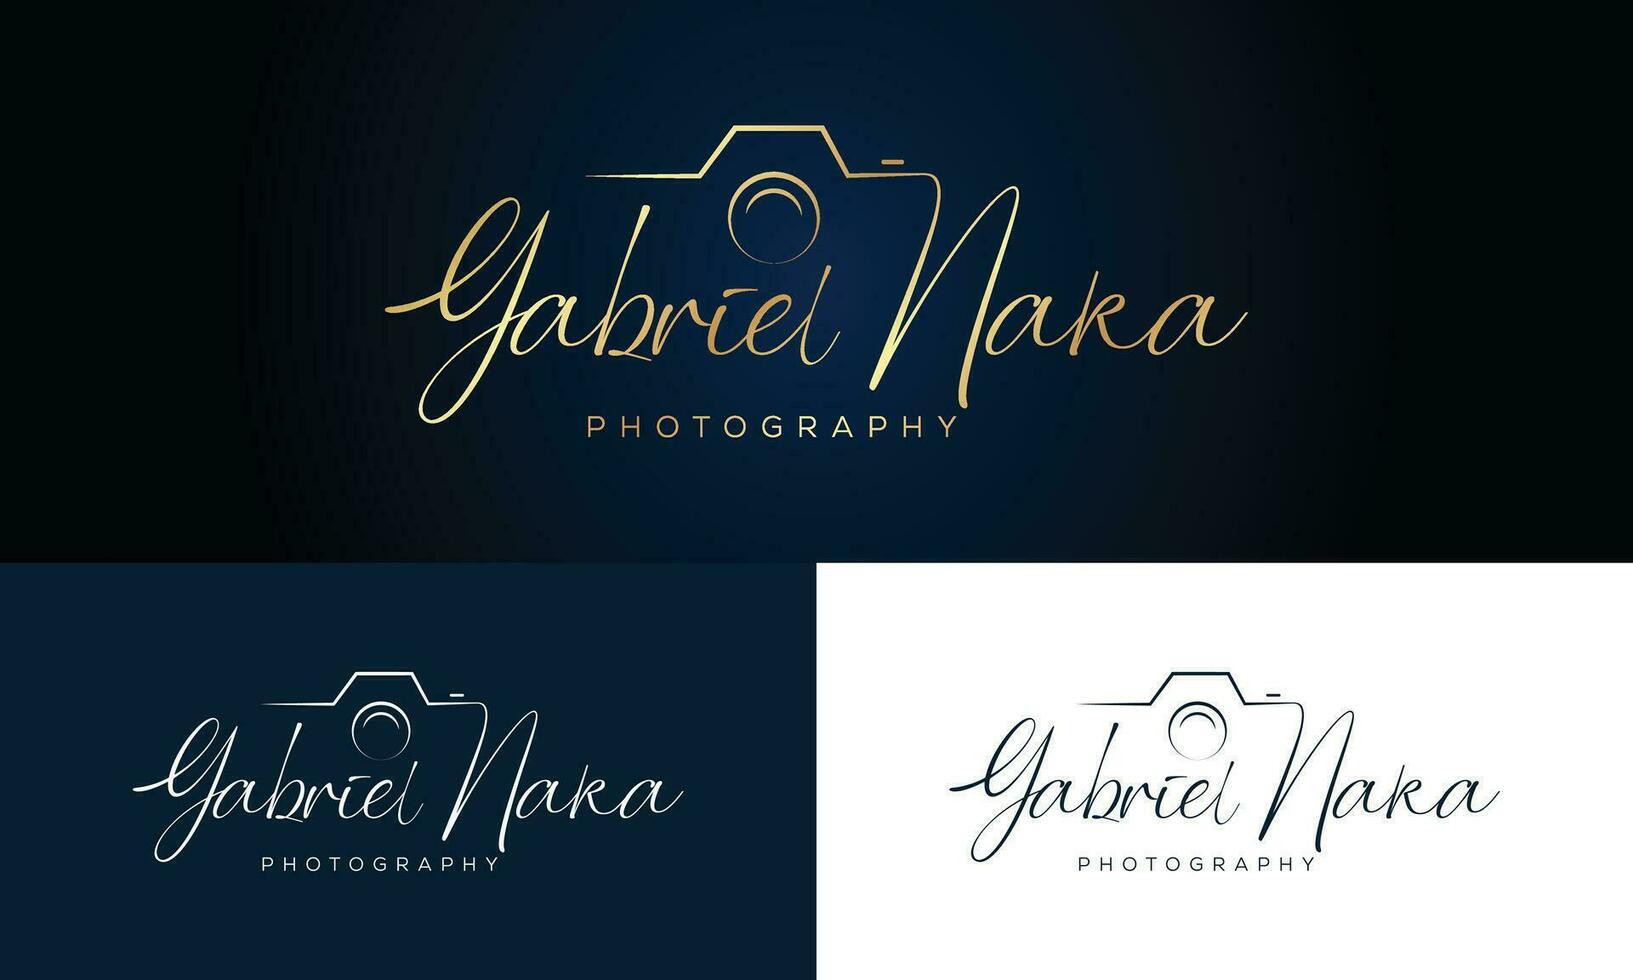 gabviel naka escritura fotografía logo modelo vector firma logo concepto